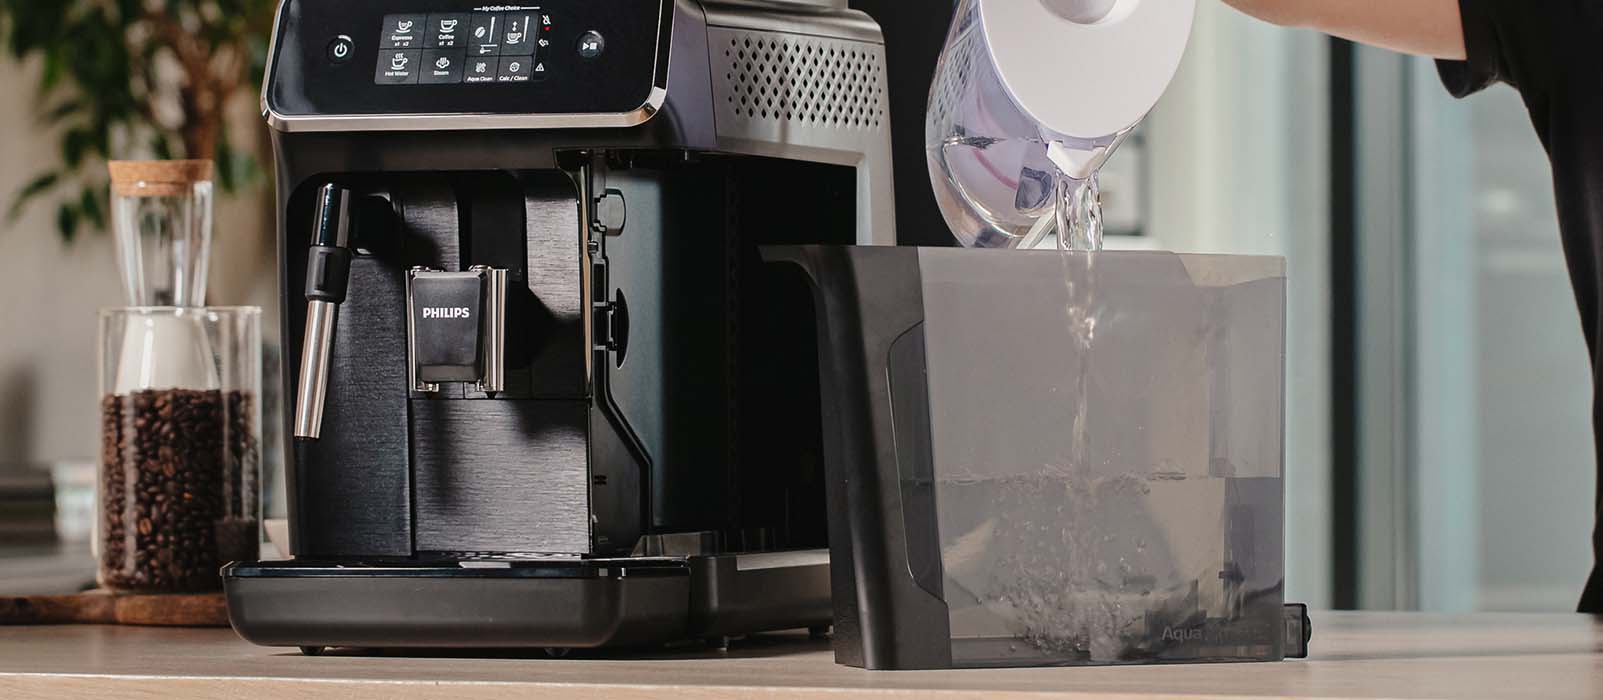 Découvrez la machine à café Lattissima de Nespresso à -30 % ! Cette machine  avec mousseur de lait intégré vous offrira un vrai moment de plaisir - La  Libre